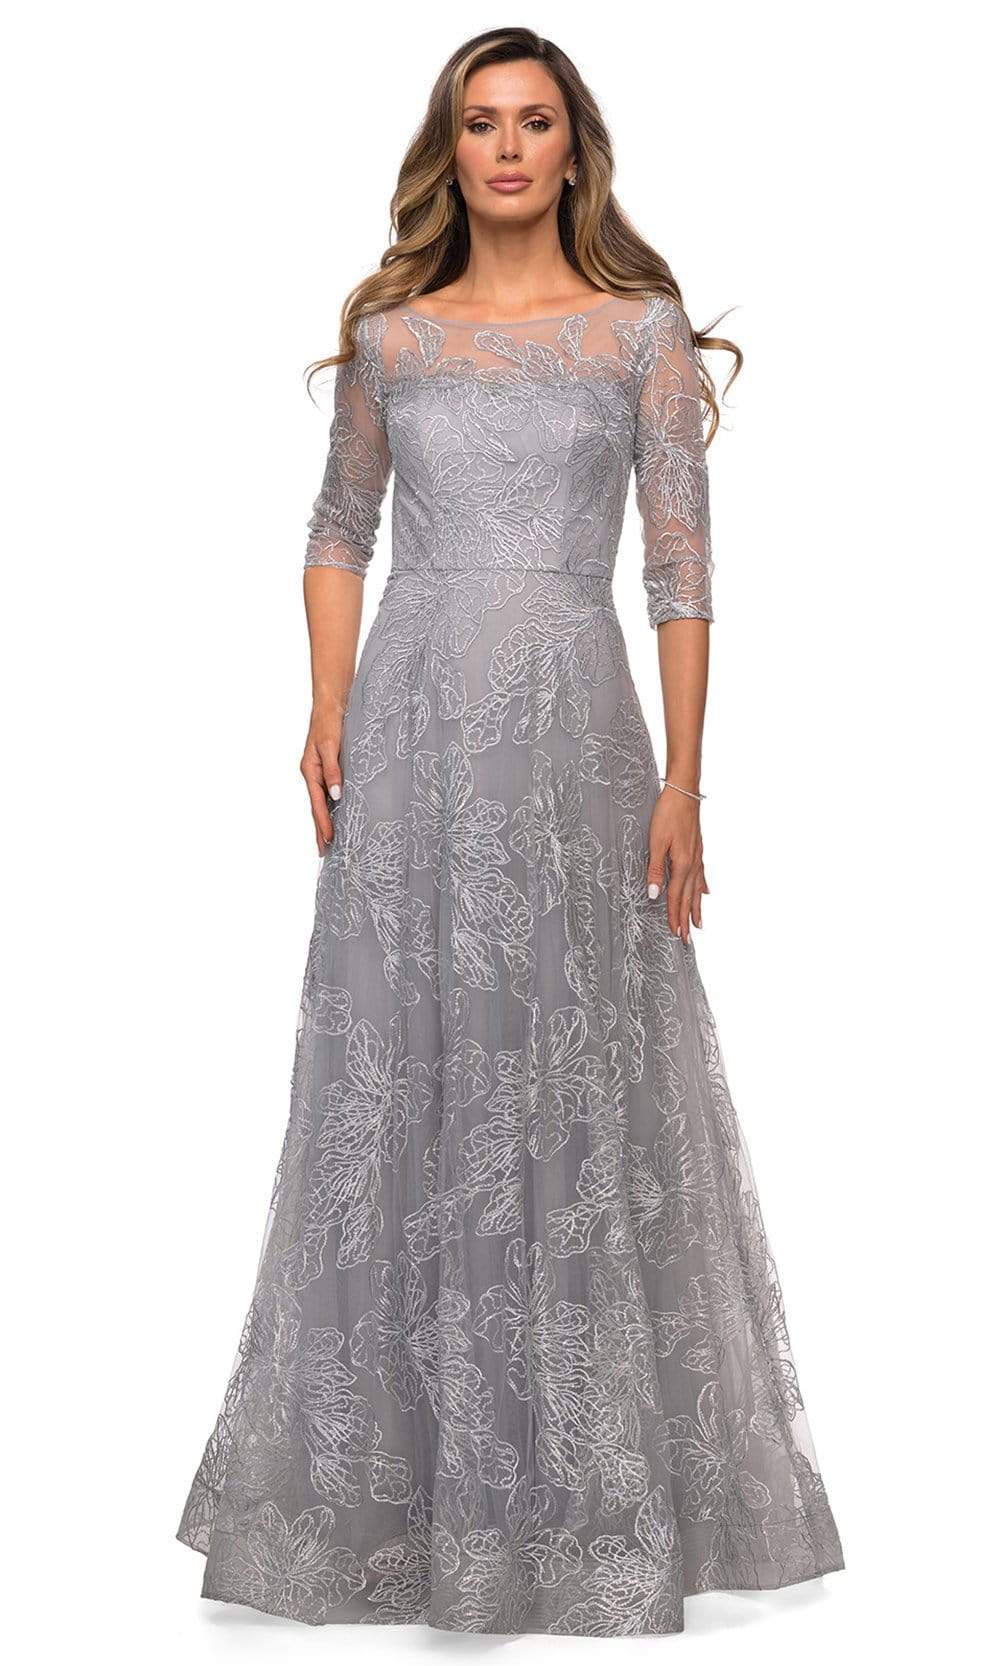 La Femme - 27942 Quarter Sleeve Sequined Lace A-Line Dress
